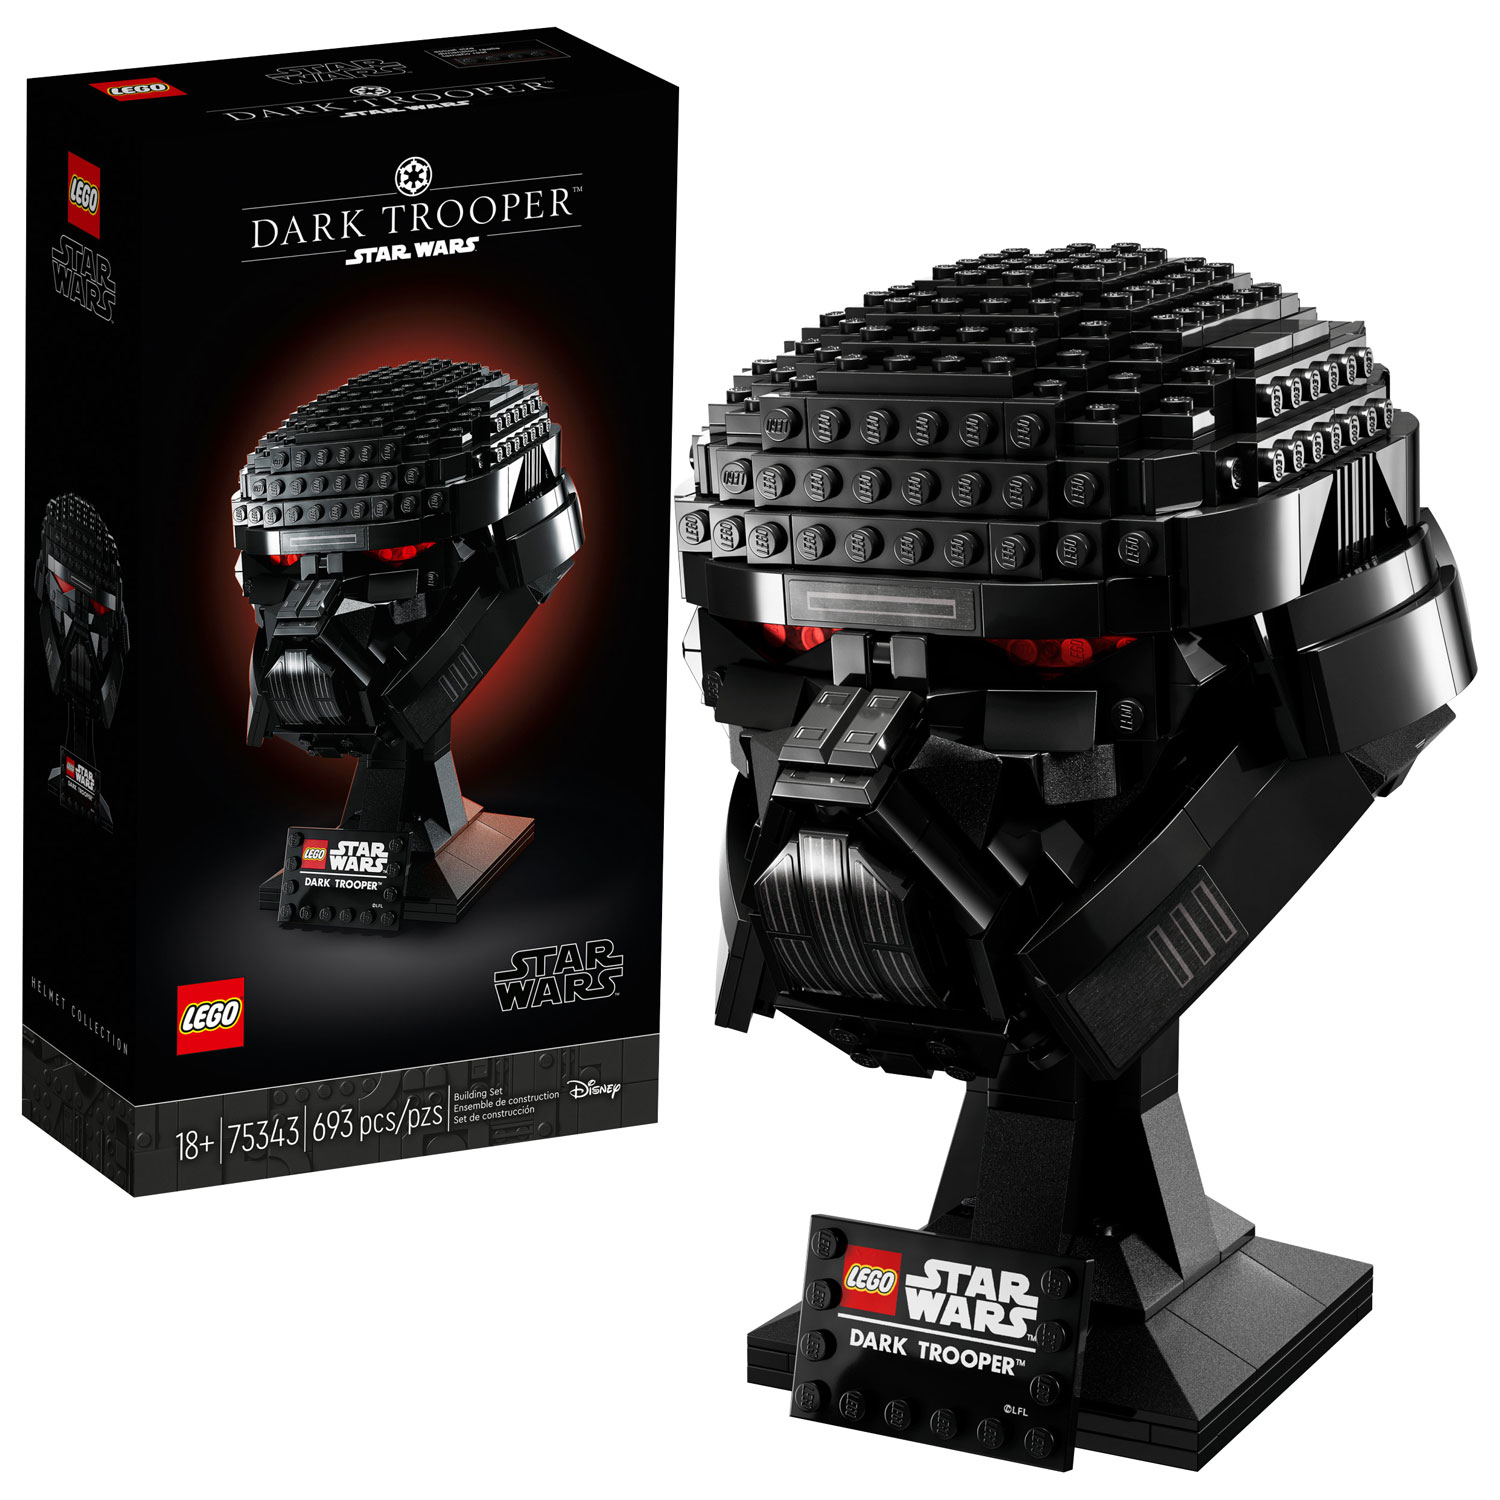 LEGO Star Wars: Dark Trooper Helmet - 693 Pieces (75343)